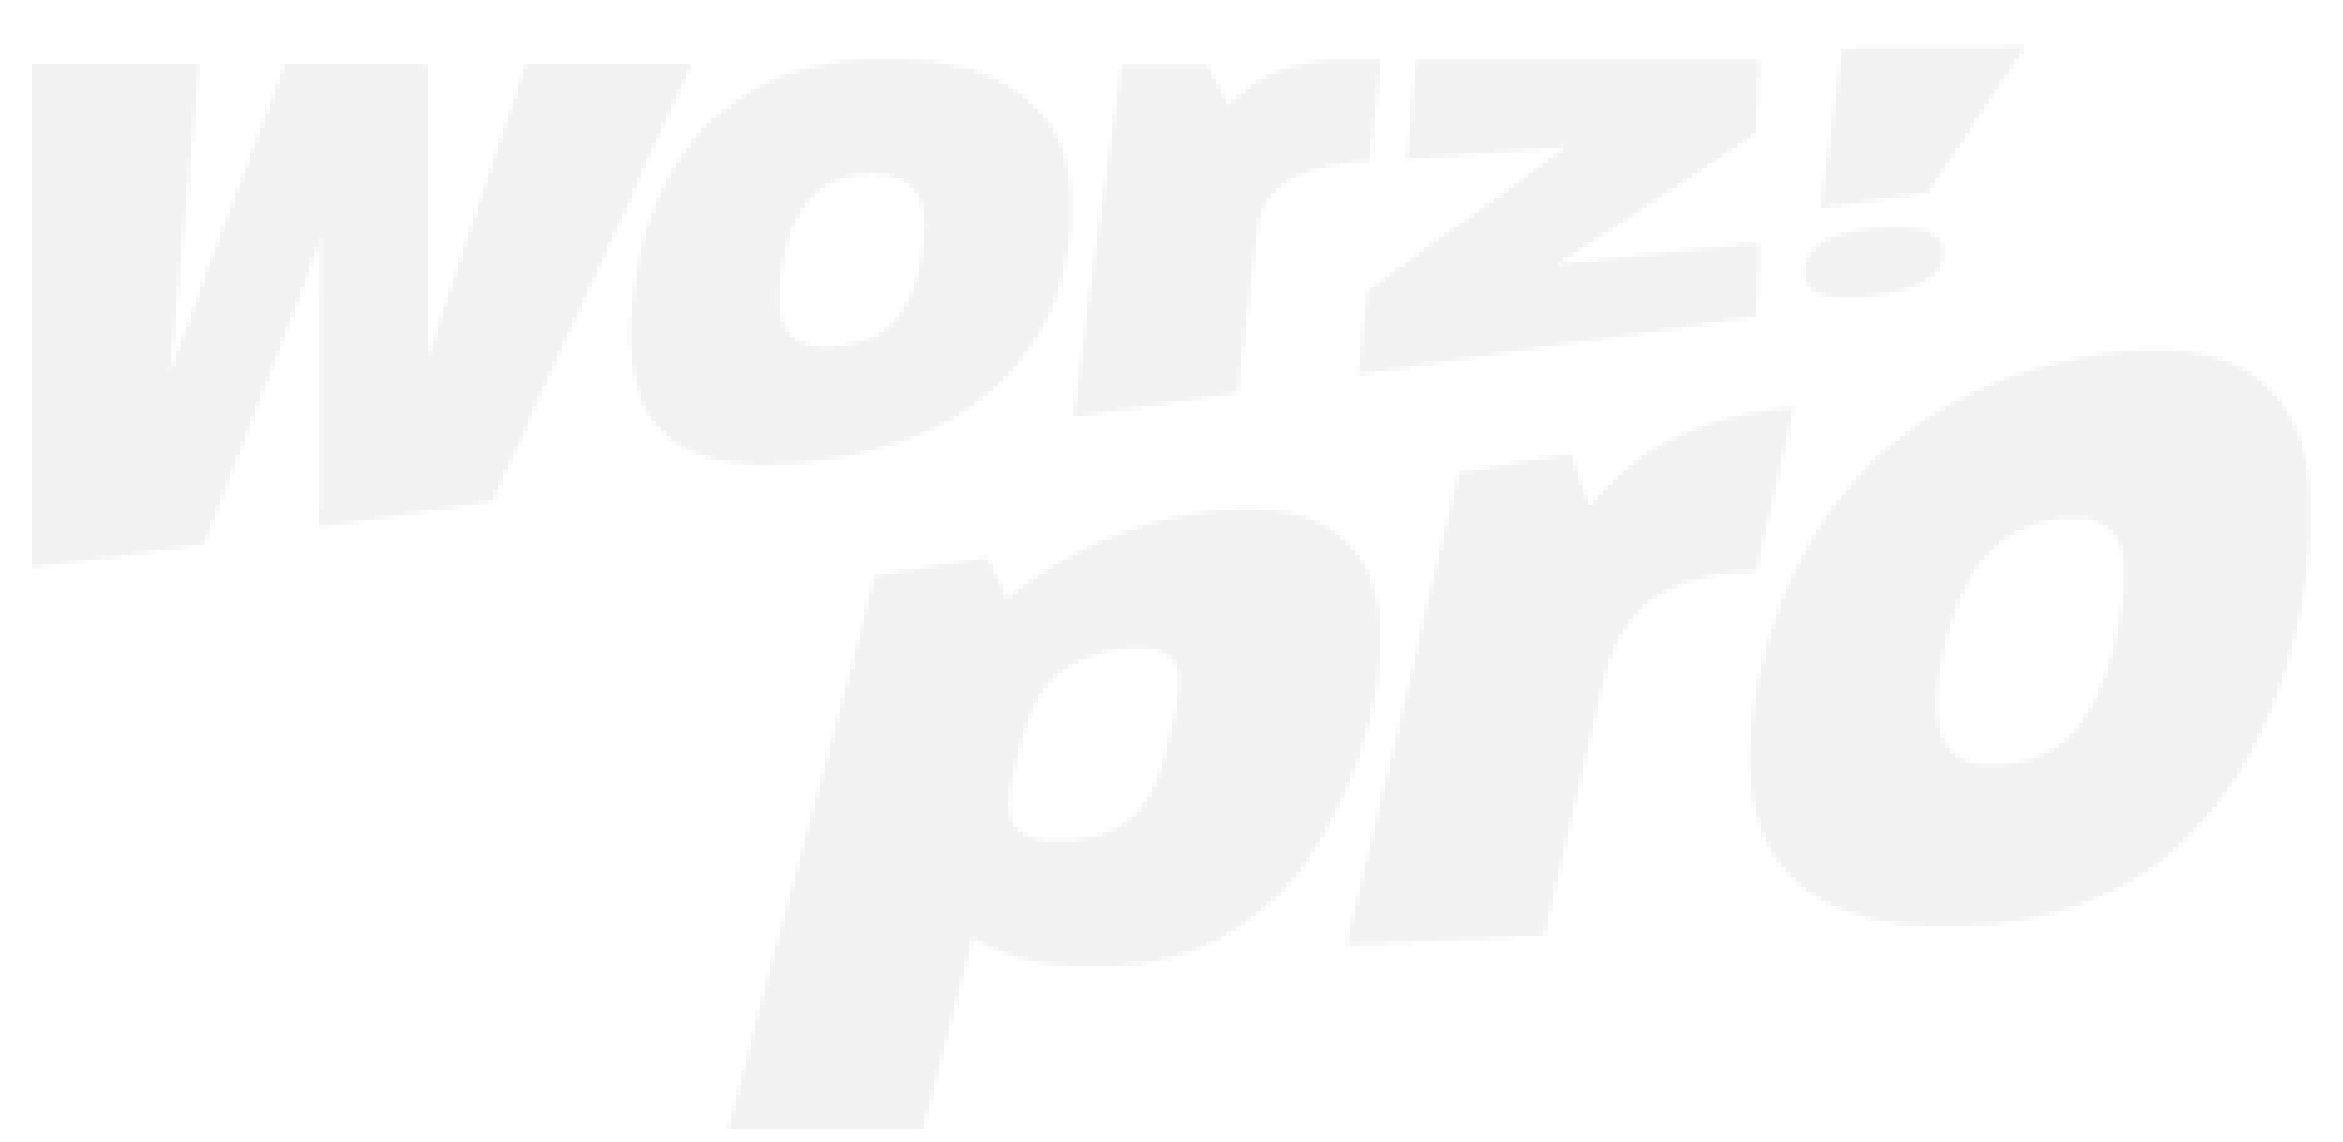 Worzpro